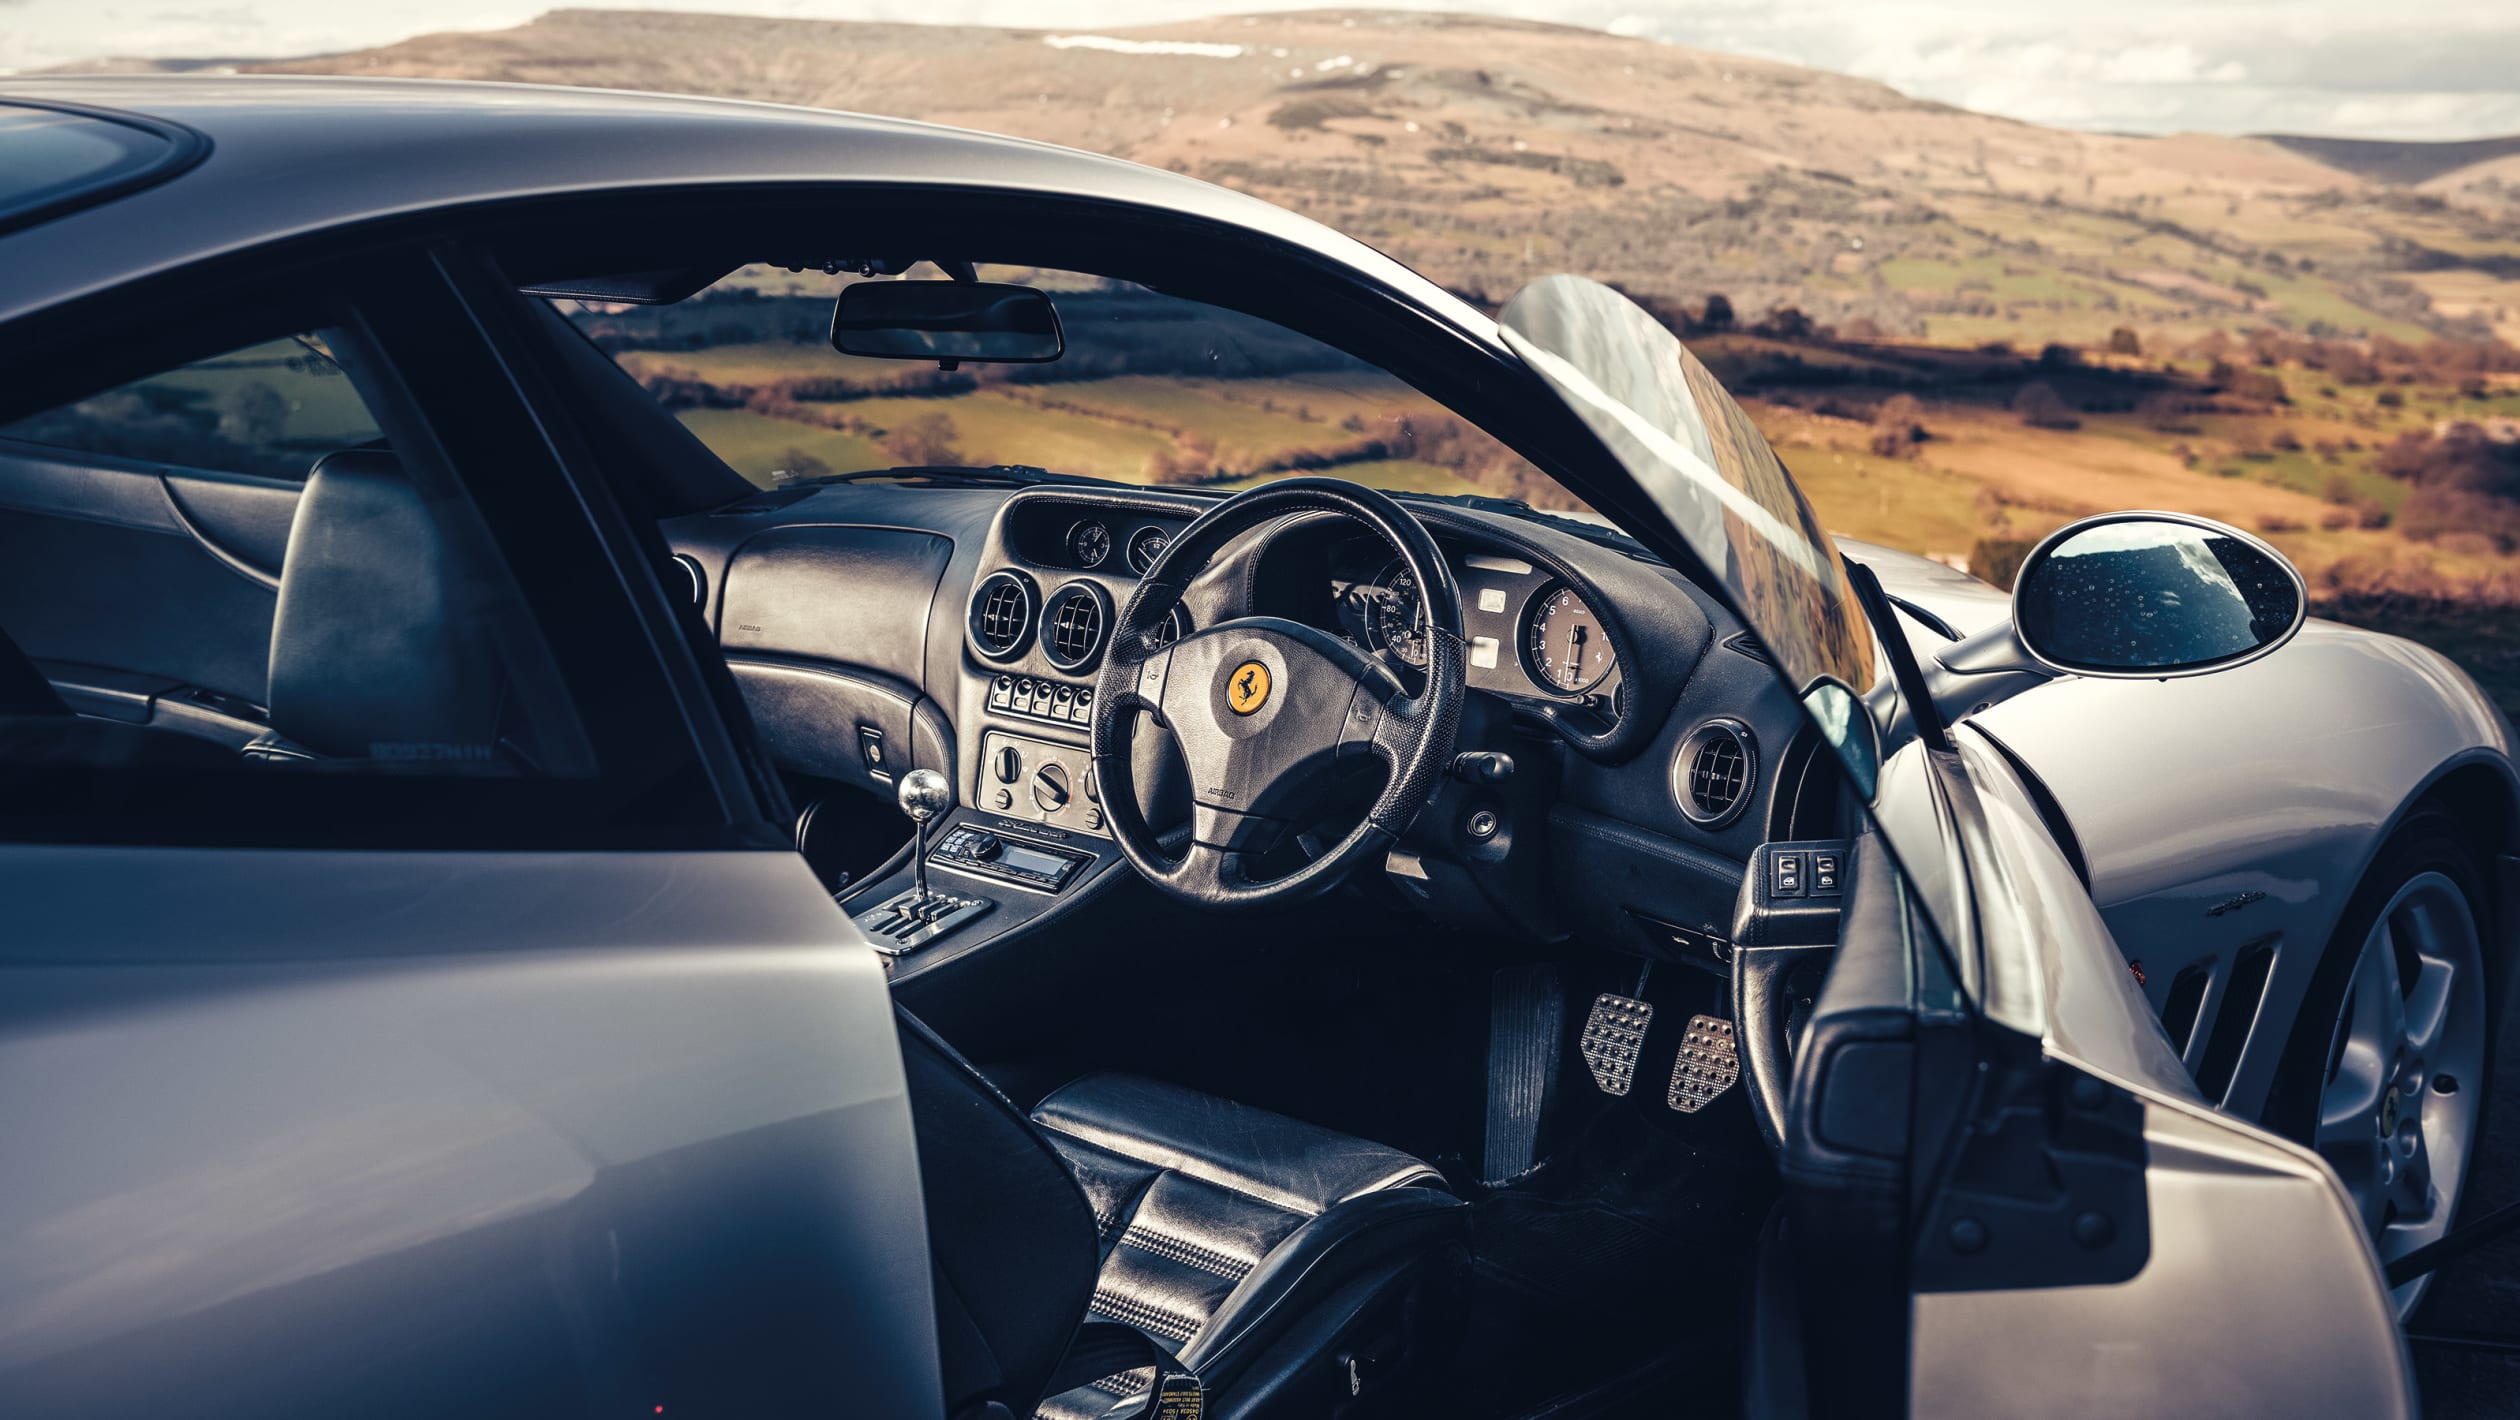 Ferrari GTs feature 17